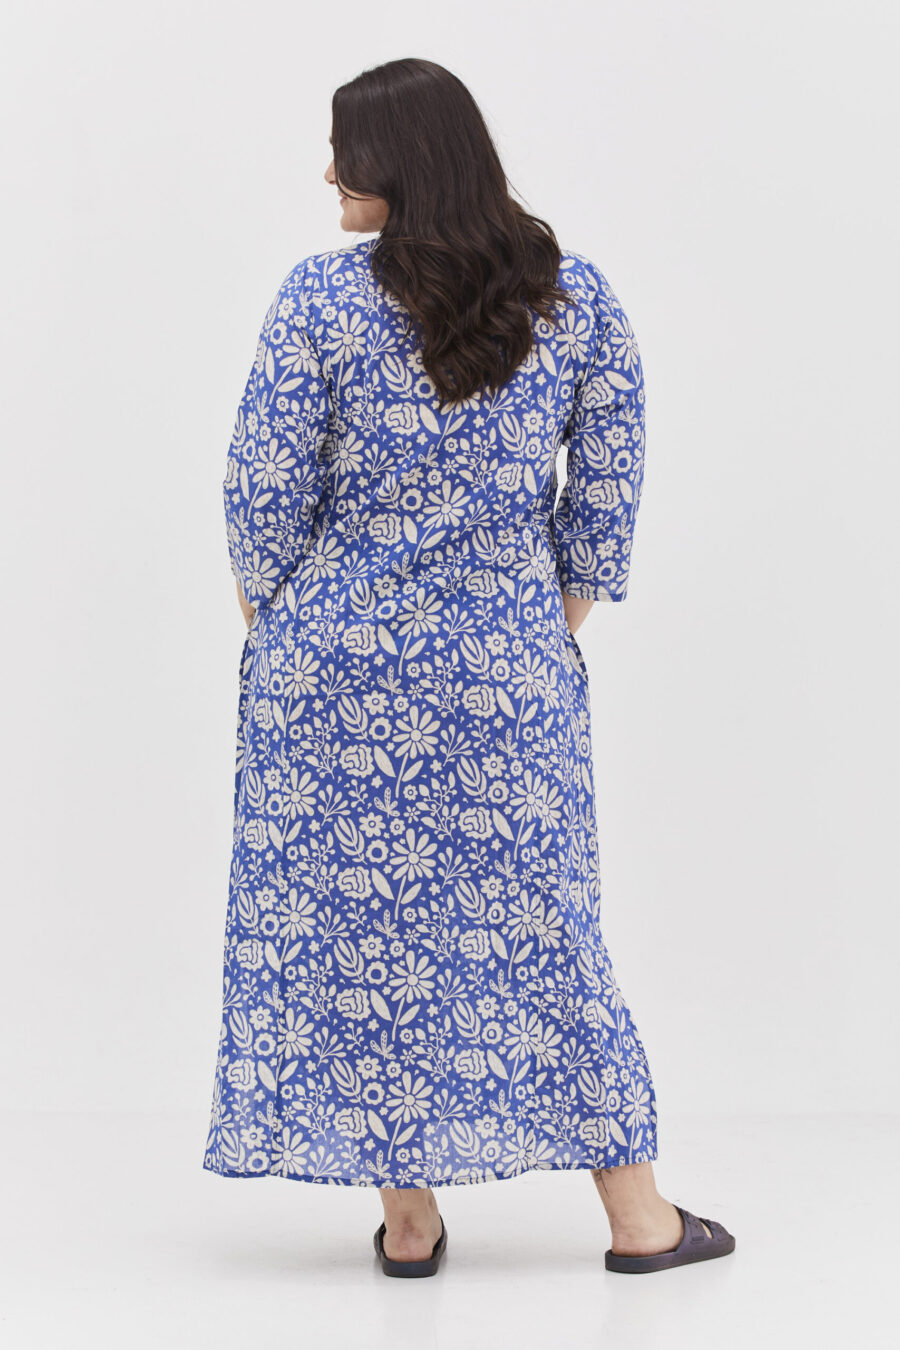 גלביה לנשים | גלבייה בעיצוב ייחודי - הדפס כחול רומנטי, שמלה בצבע כחול בהיר בשילוב פרינט פרחים לבנים